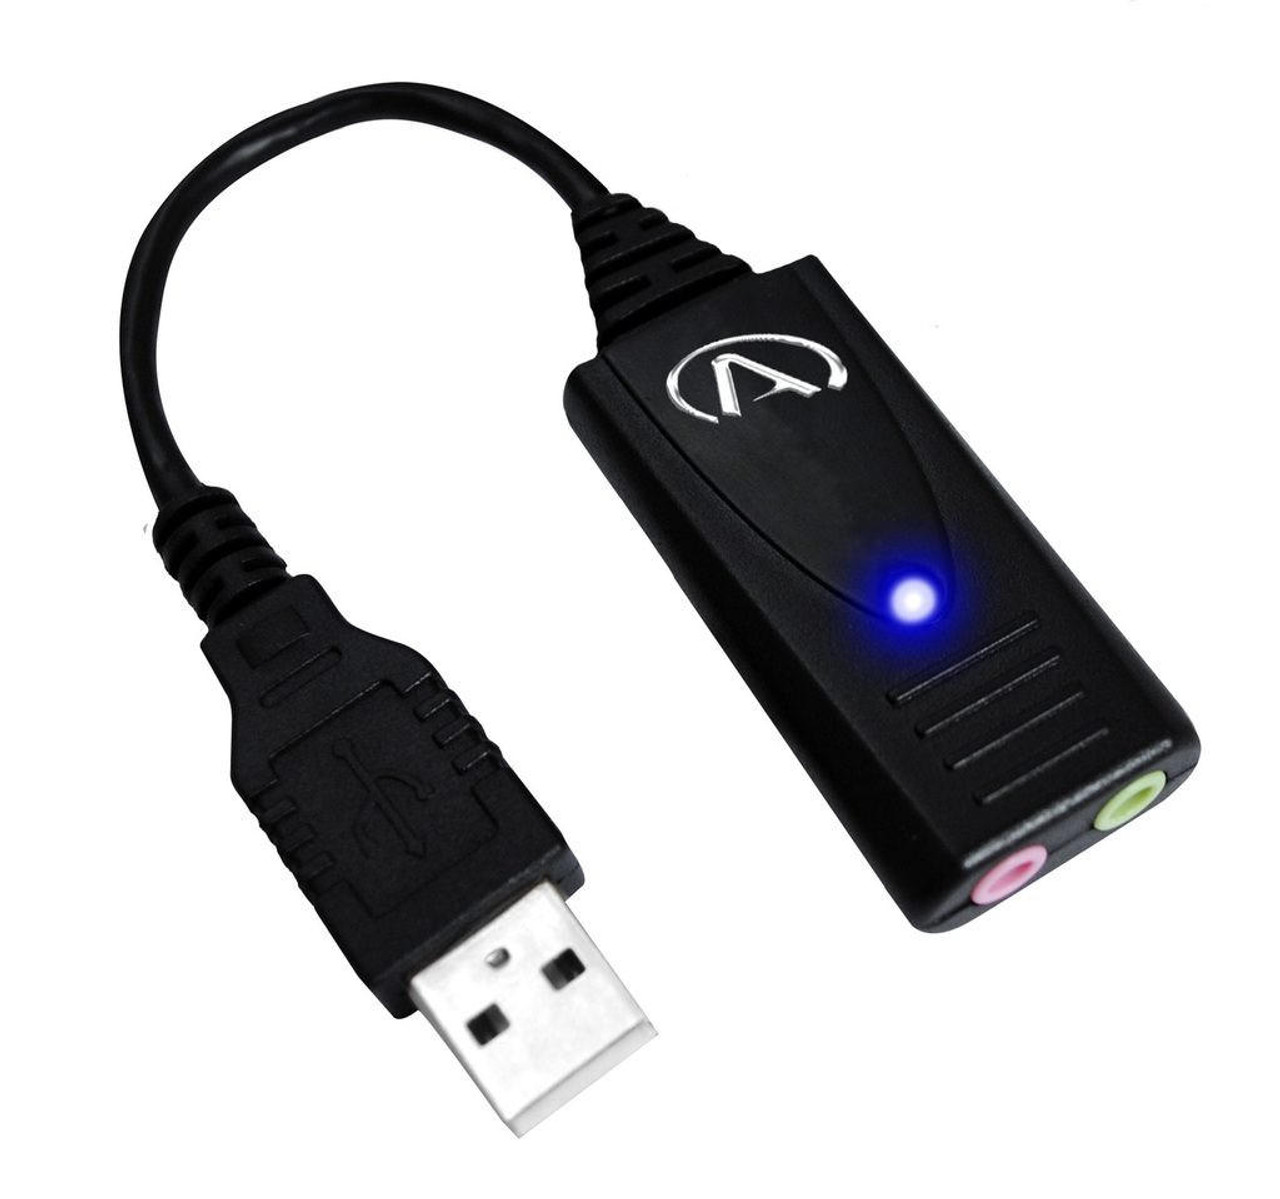 Adaptateur USB / jack audio + micro carton son externe compatible